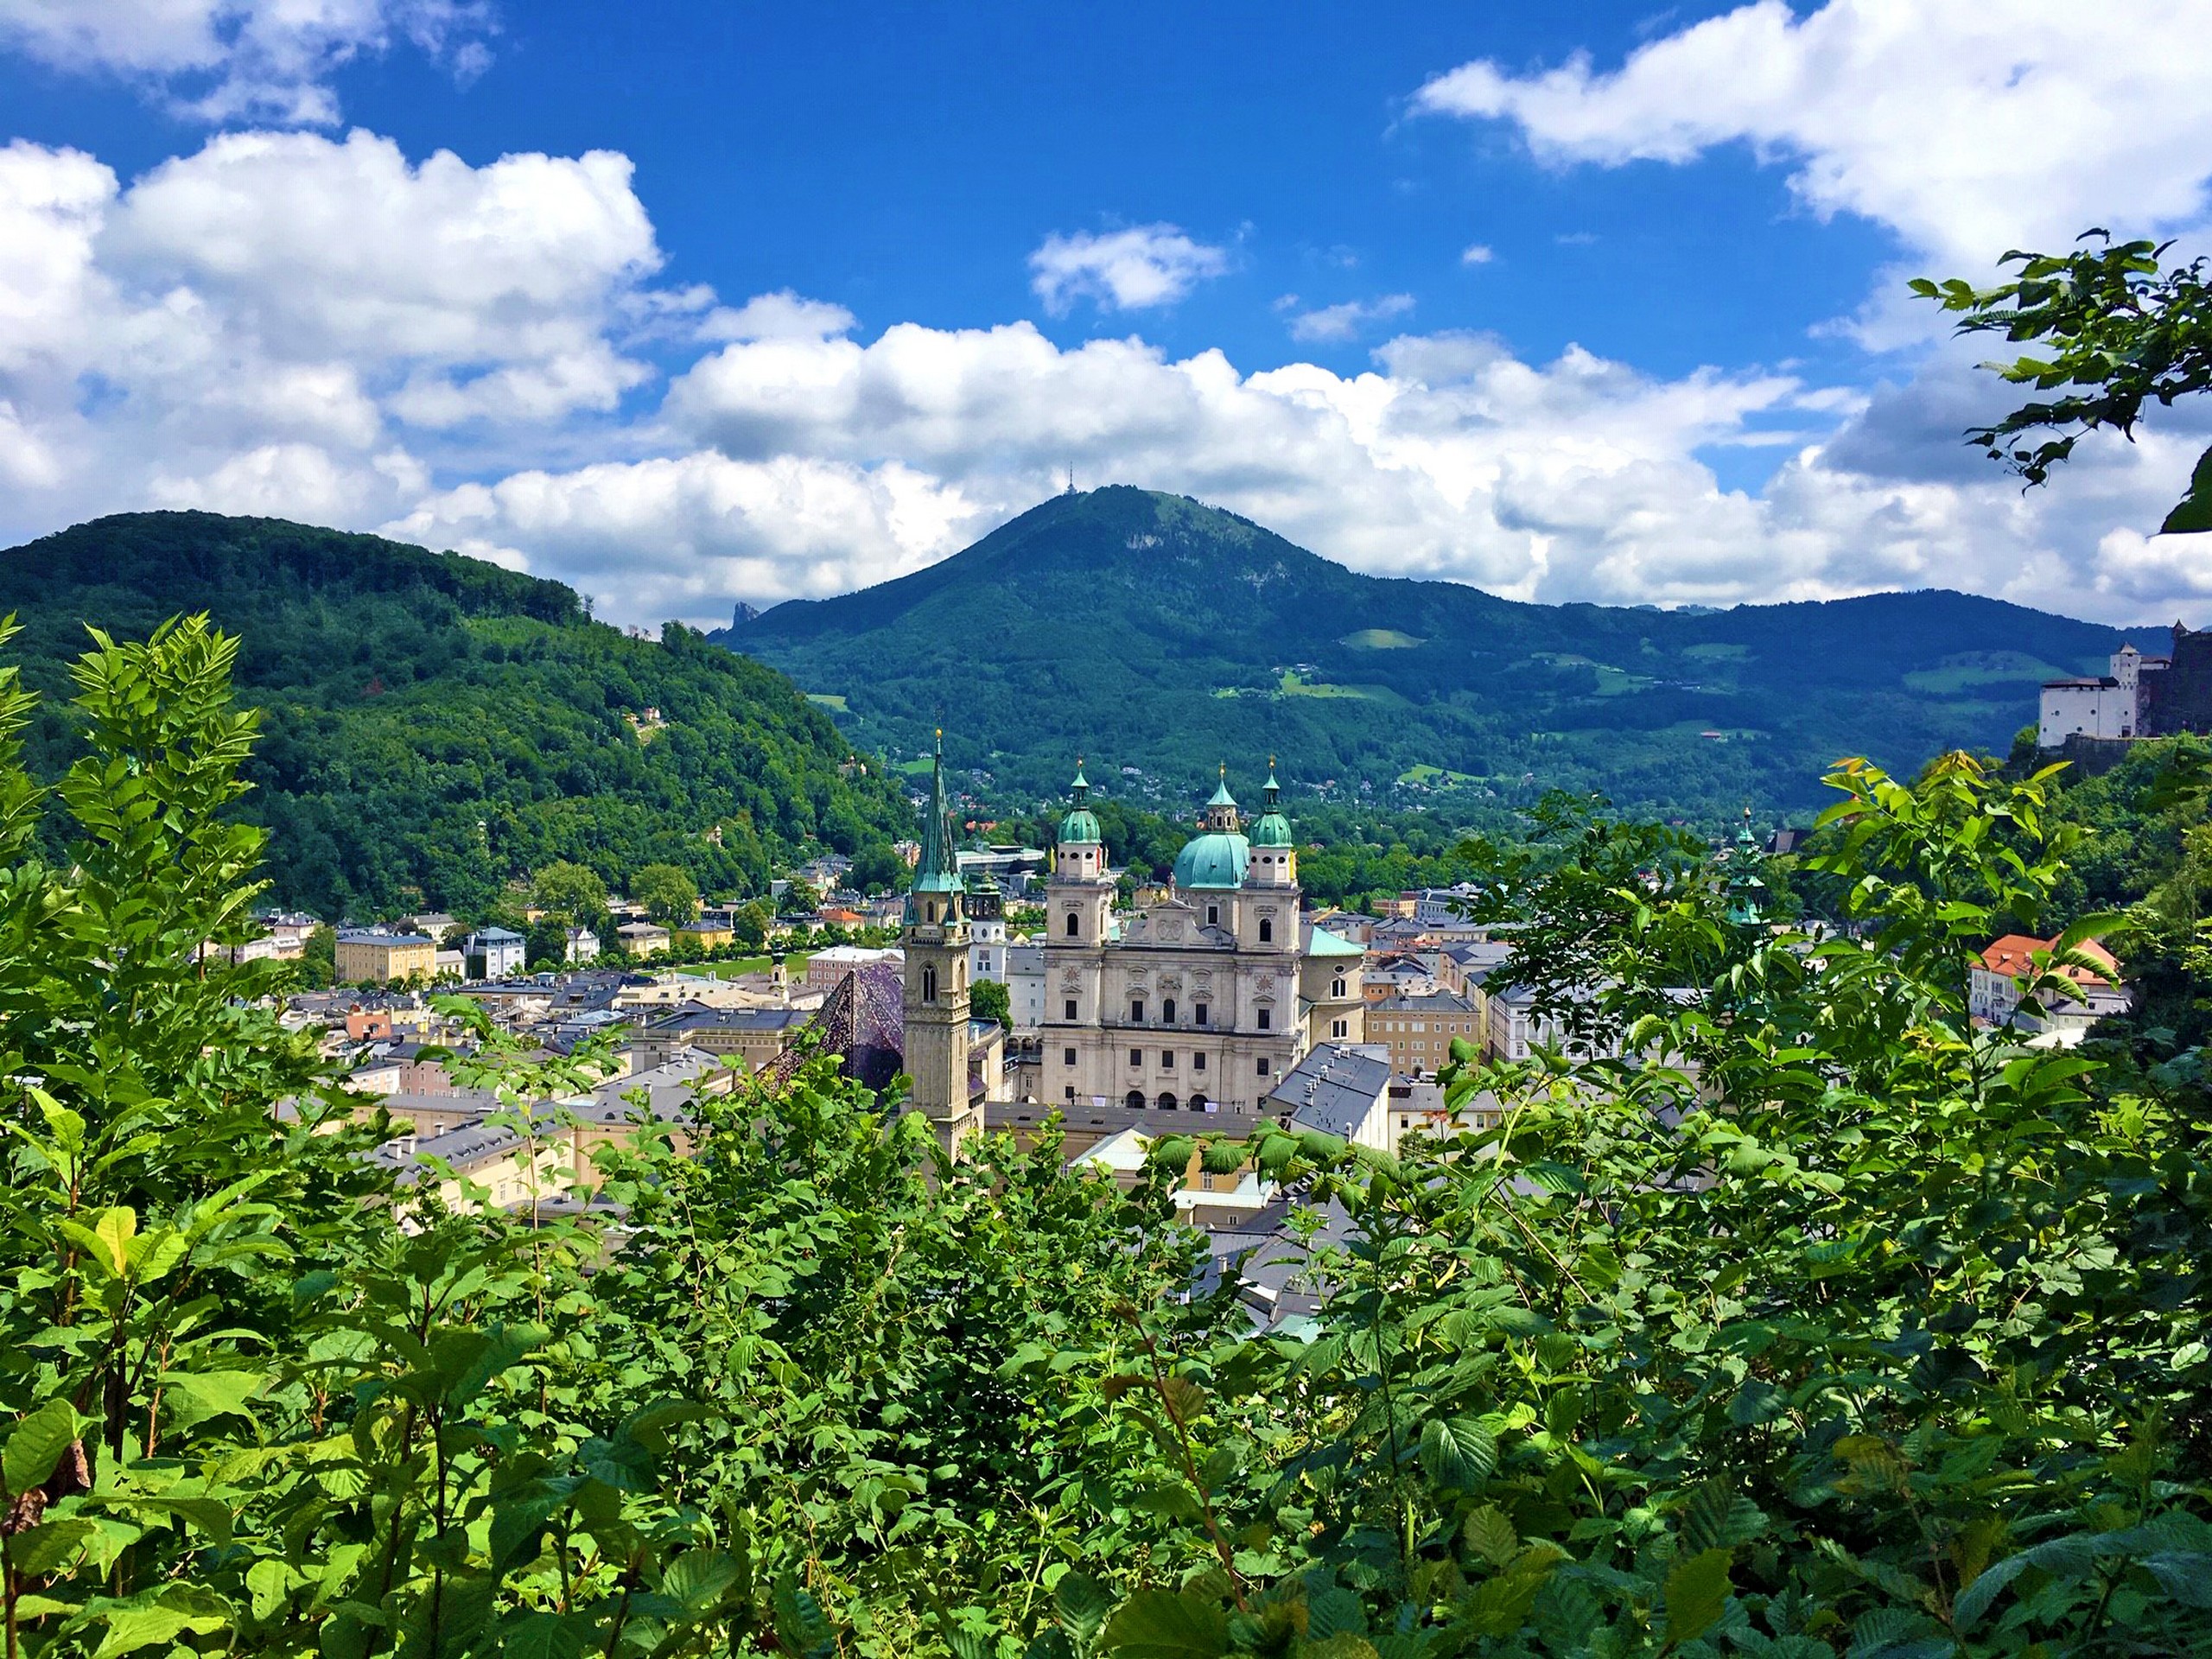 Salzburg, where Alpe Adria trail starts